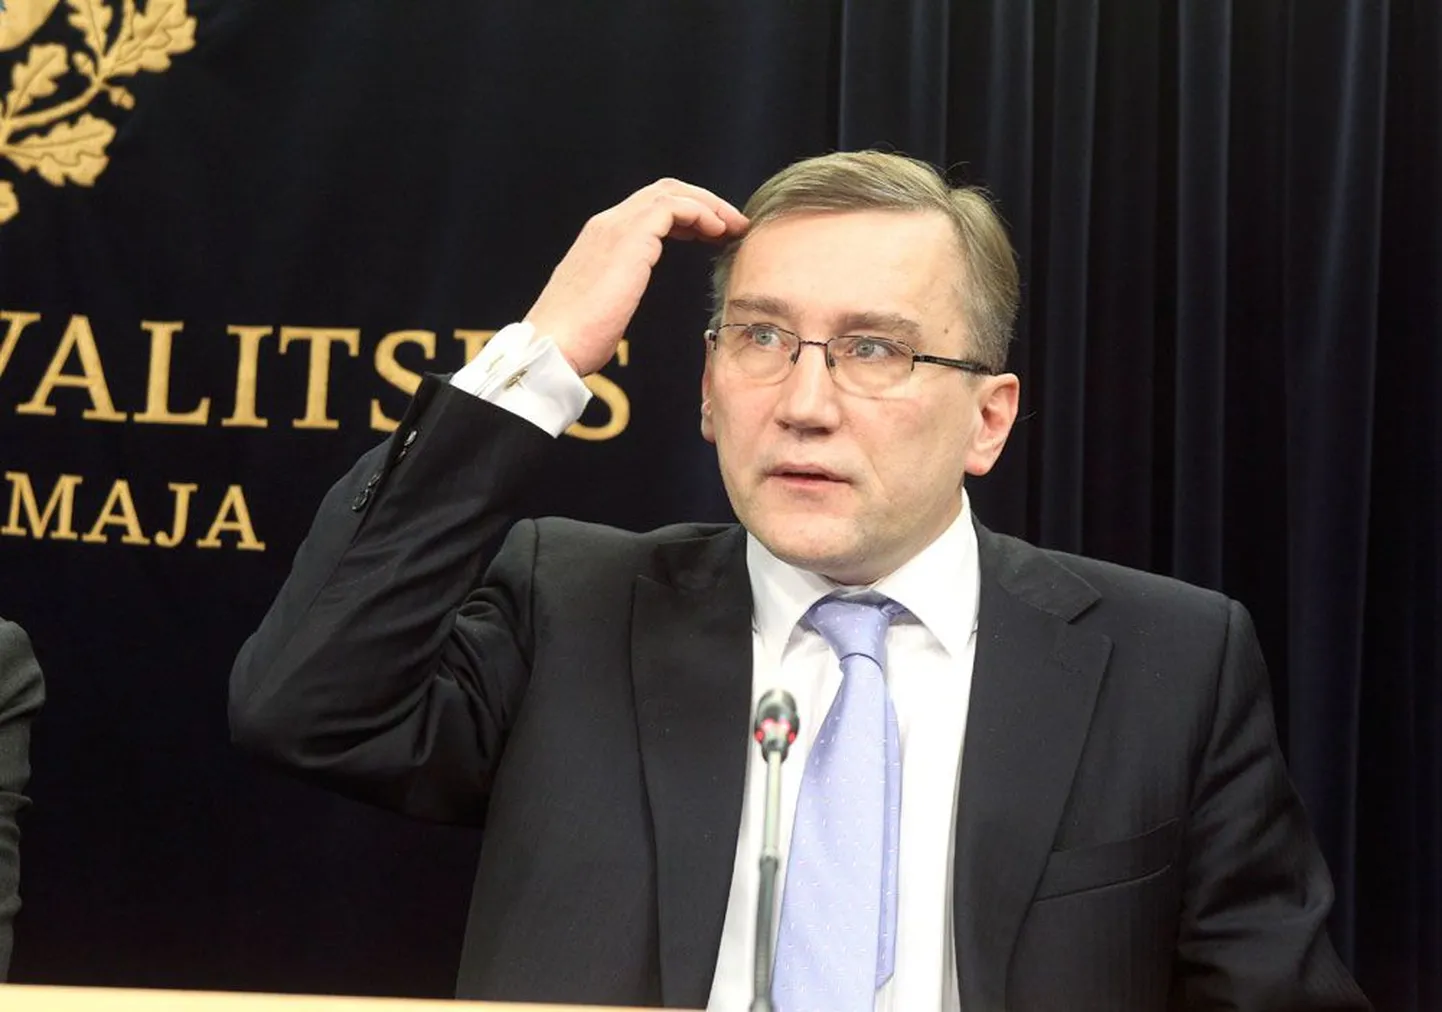 Majandusminister Juhan Partsil tuleb vaata et iga päev Estonian Airi tuleviku kohta selgitusi anda. Pildil on ta neljapäeval valitsuse pressikonverentsil.